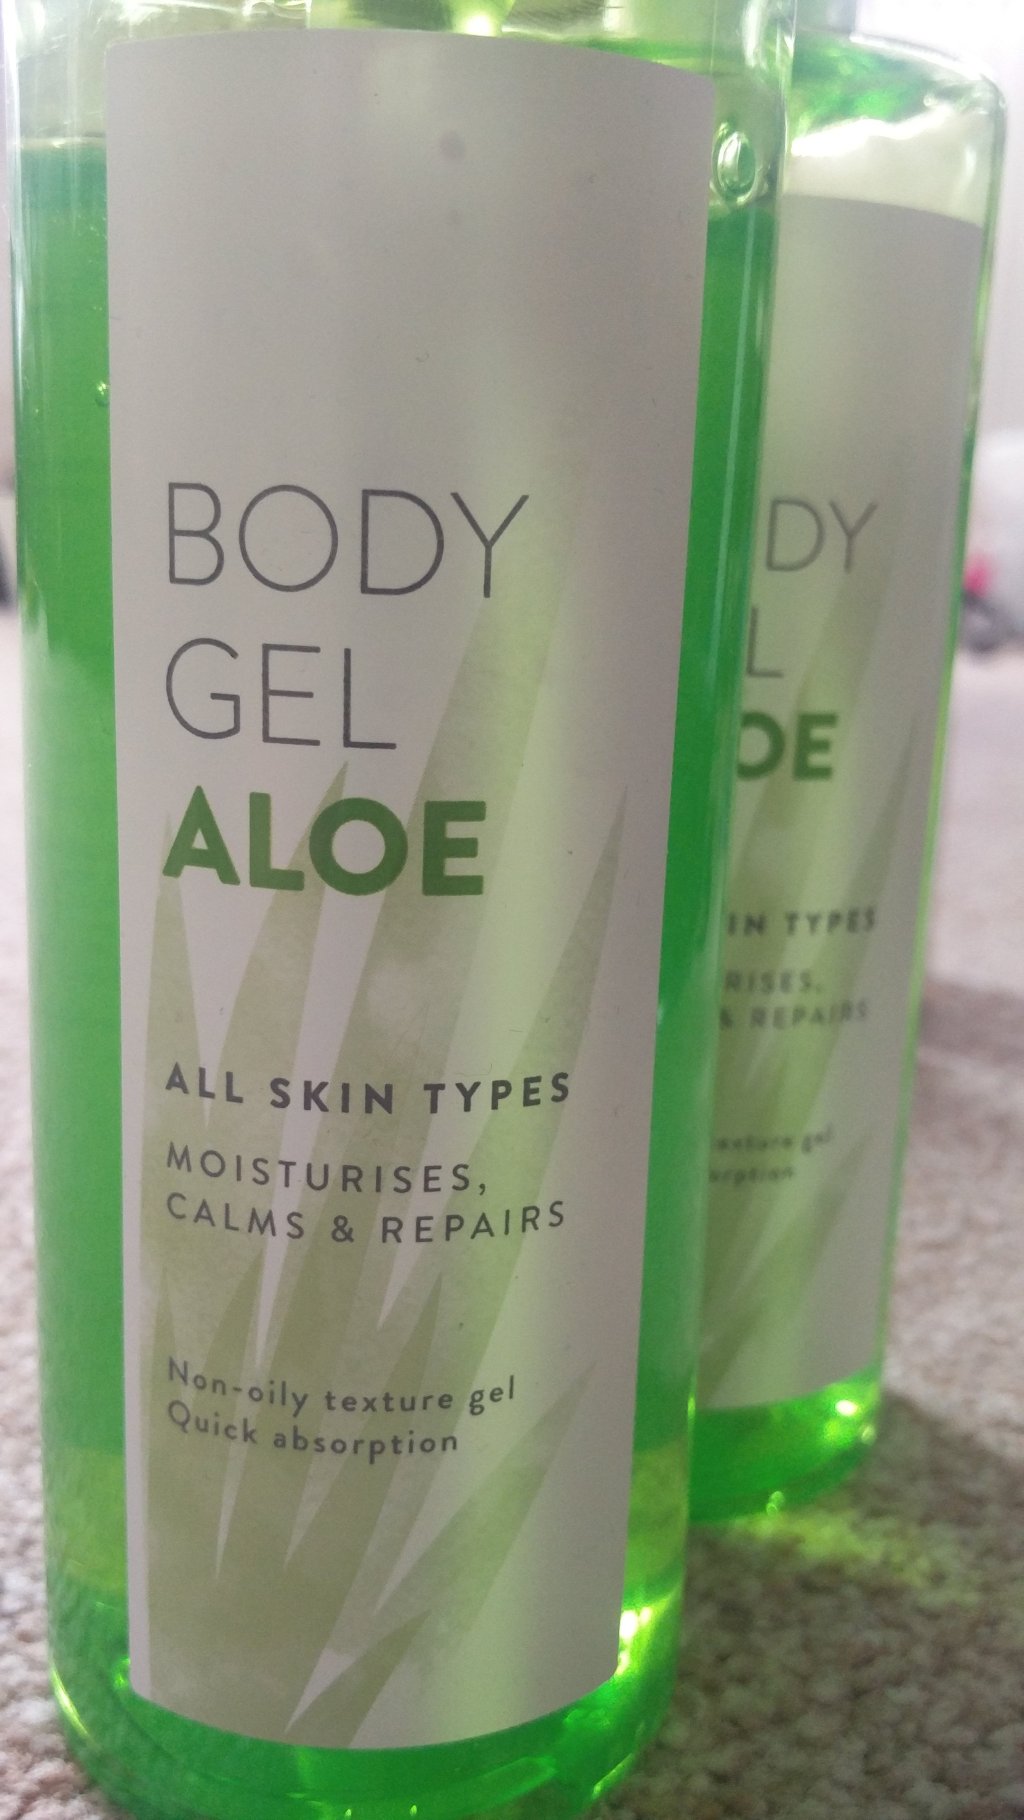 Lets Talk about Moisture |Tesco Body Gel Aloe Review|#5